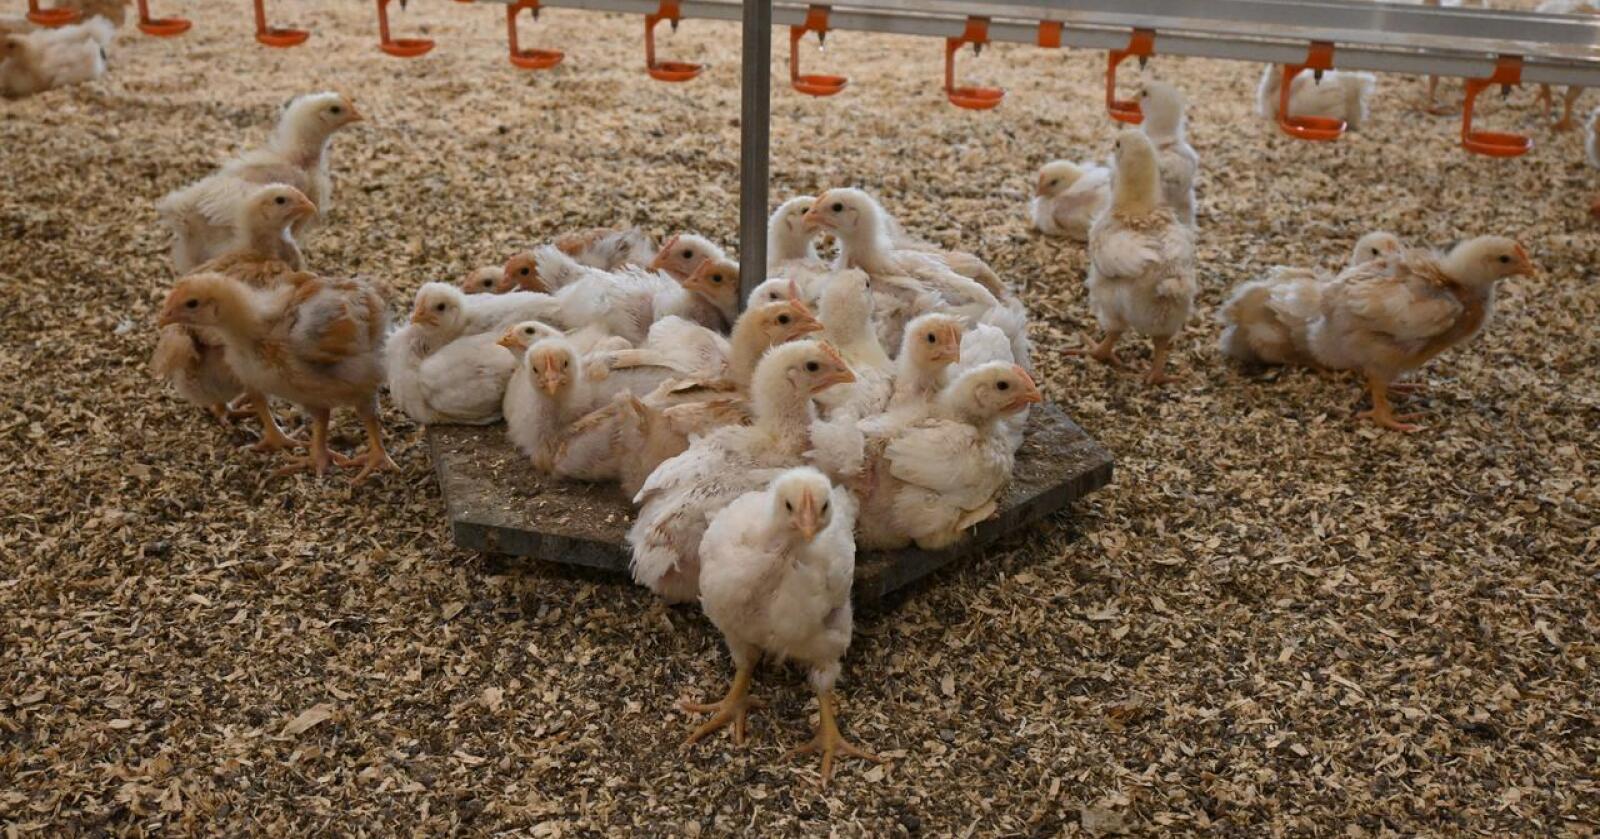 NY PROTEINKILDE: I framtida er det ikke utenkelig at kyllinger blir fôret opp på norskproduserte blåskjell. Foto: Liv Jorunn Denstadli Sagmo